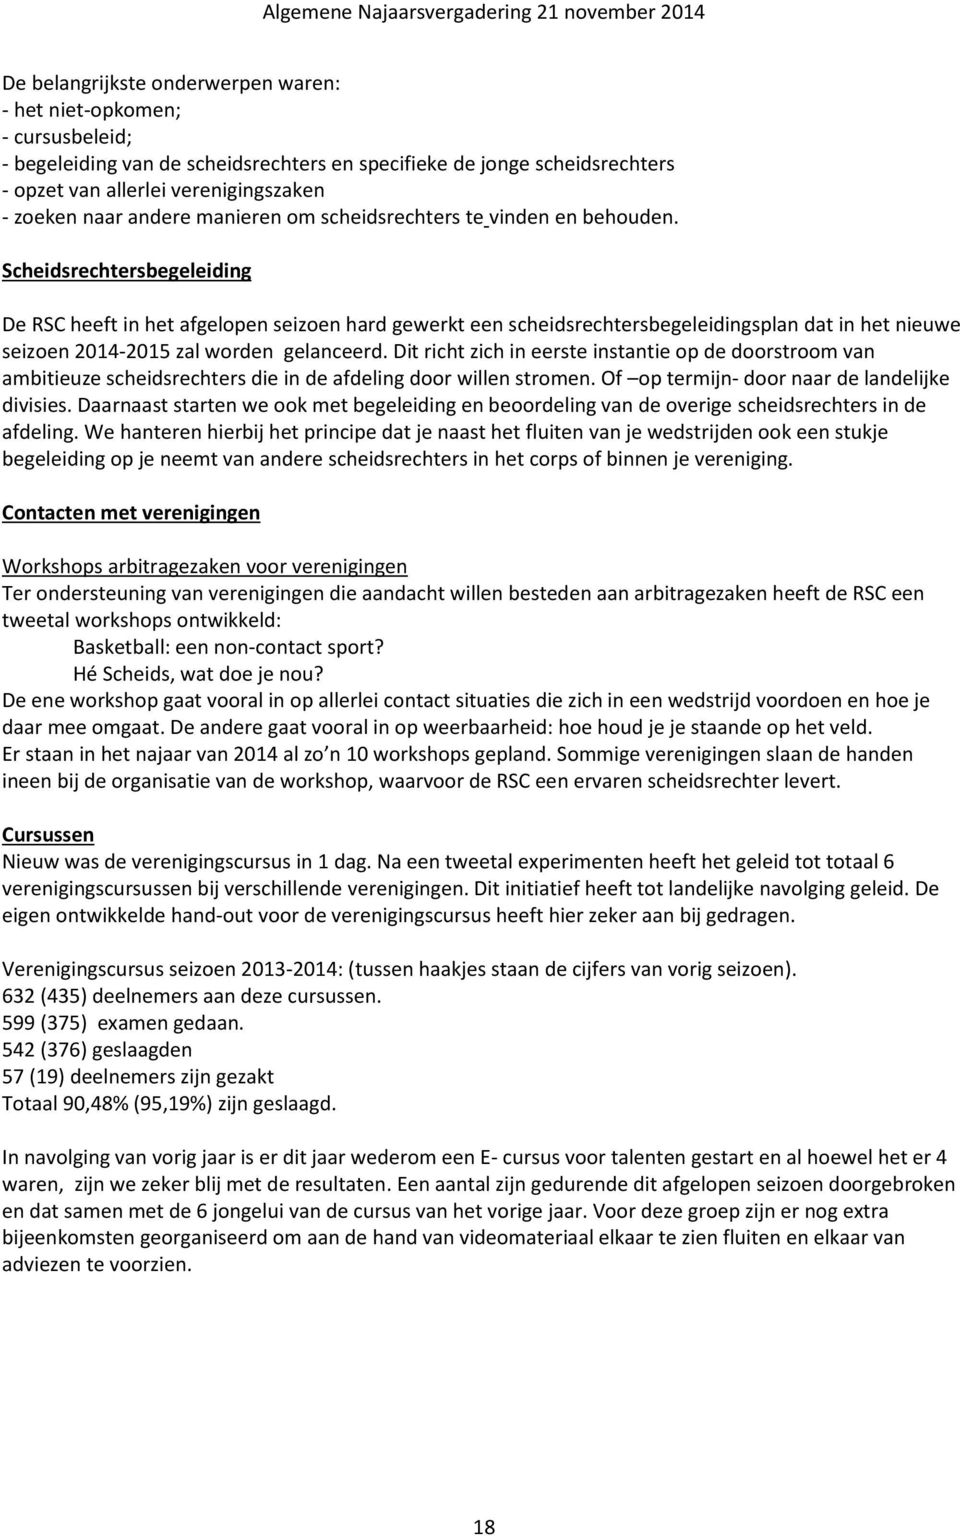 Scheidsrechtersbegeleiding De RSC heeft in het afgelopen seizoen hard gewerkt een scheidsrechtersbegeleidingsplan dat in het nieuwe seizoen 2014-2015 zal worden gelanceerd.